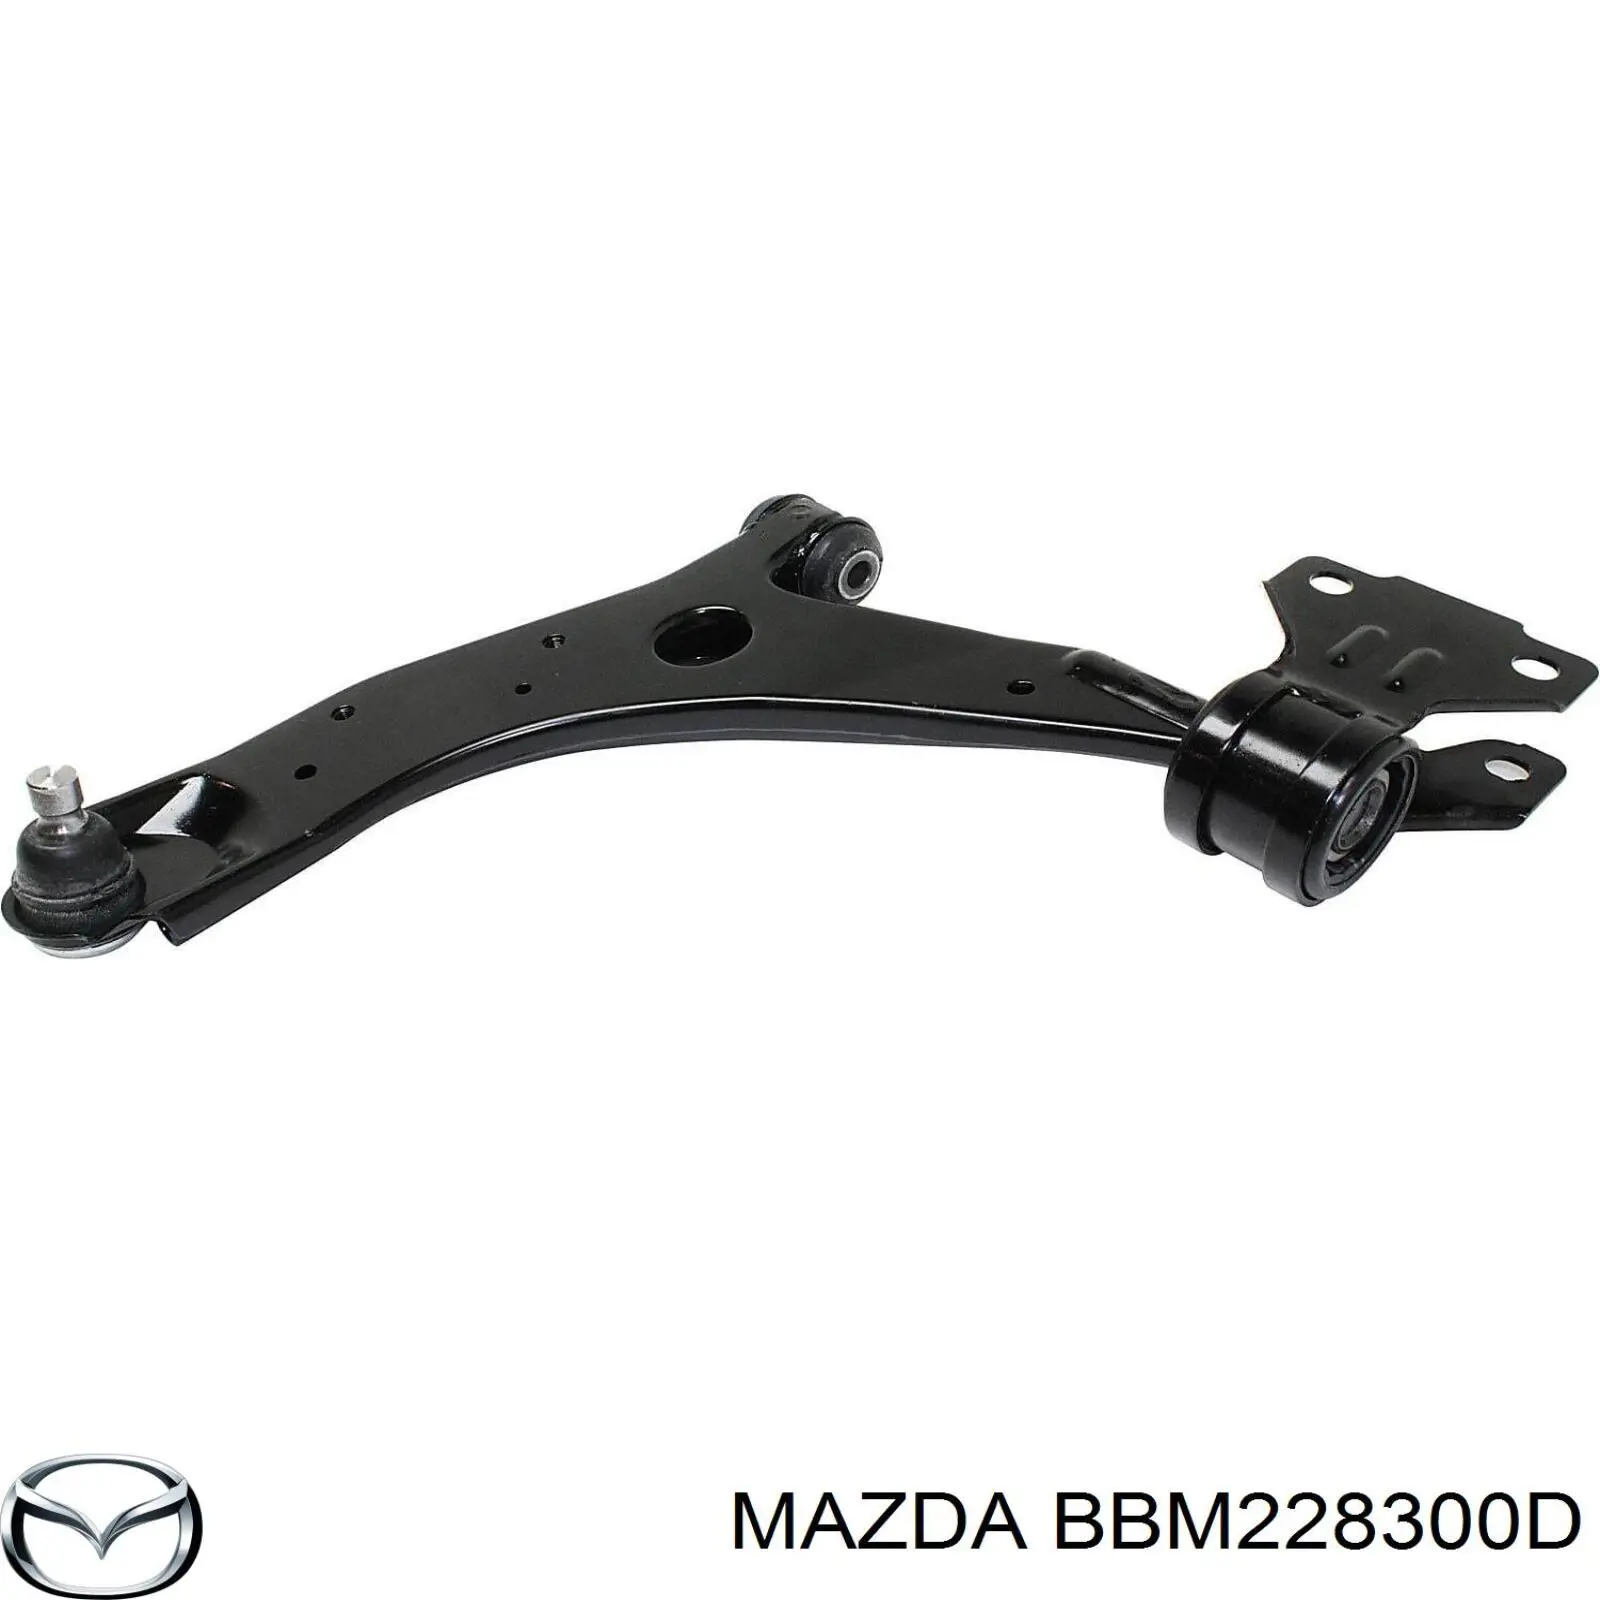 BBM228300D Mazda brazo de suspension trasera